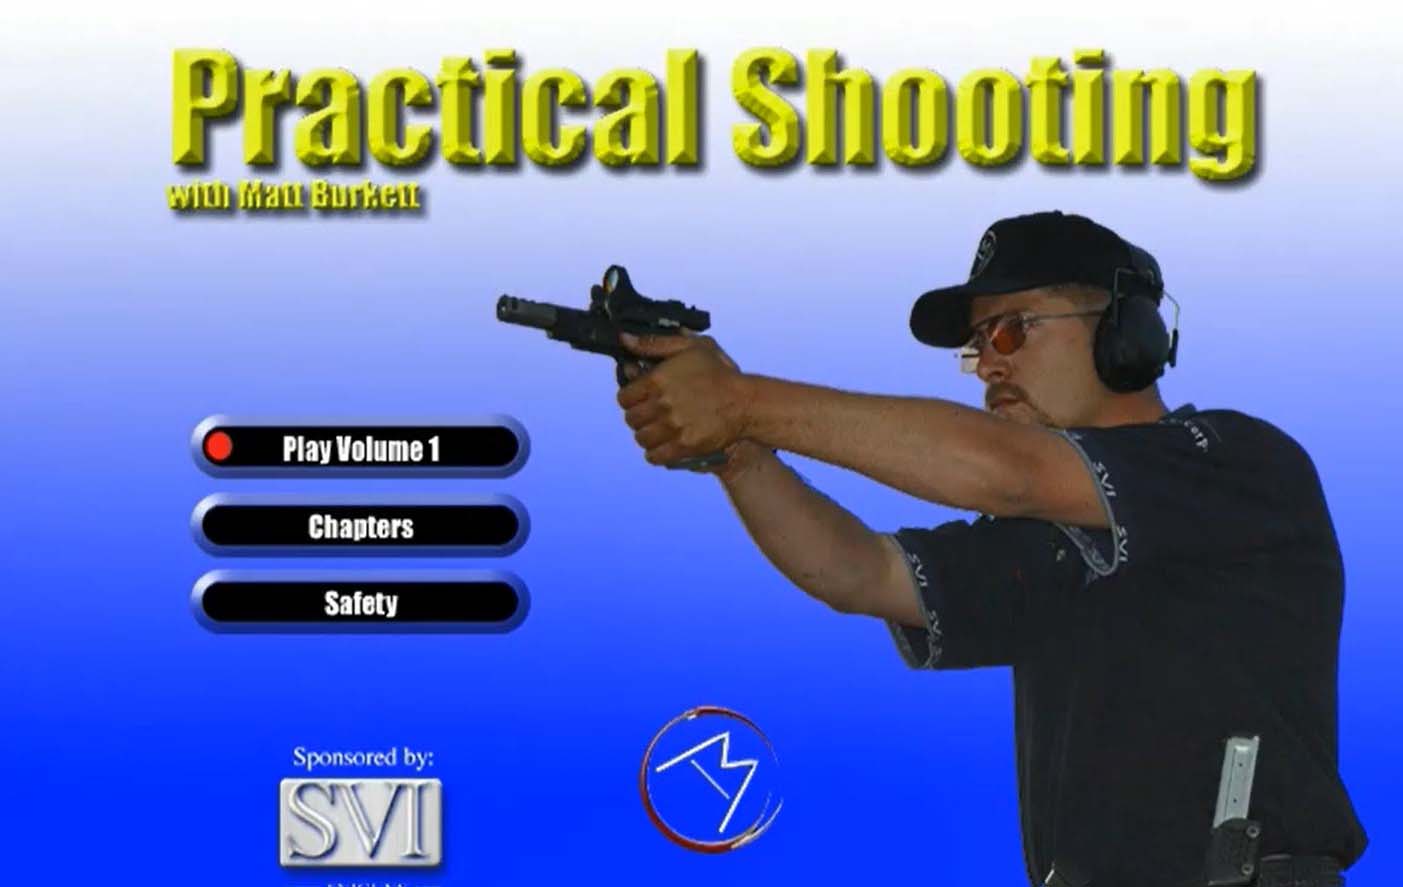 آموزش تکنیکهای تیراندازی با سلاح کمری - مربی مت بورکت - قسمت 1